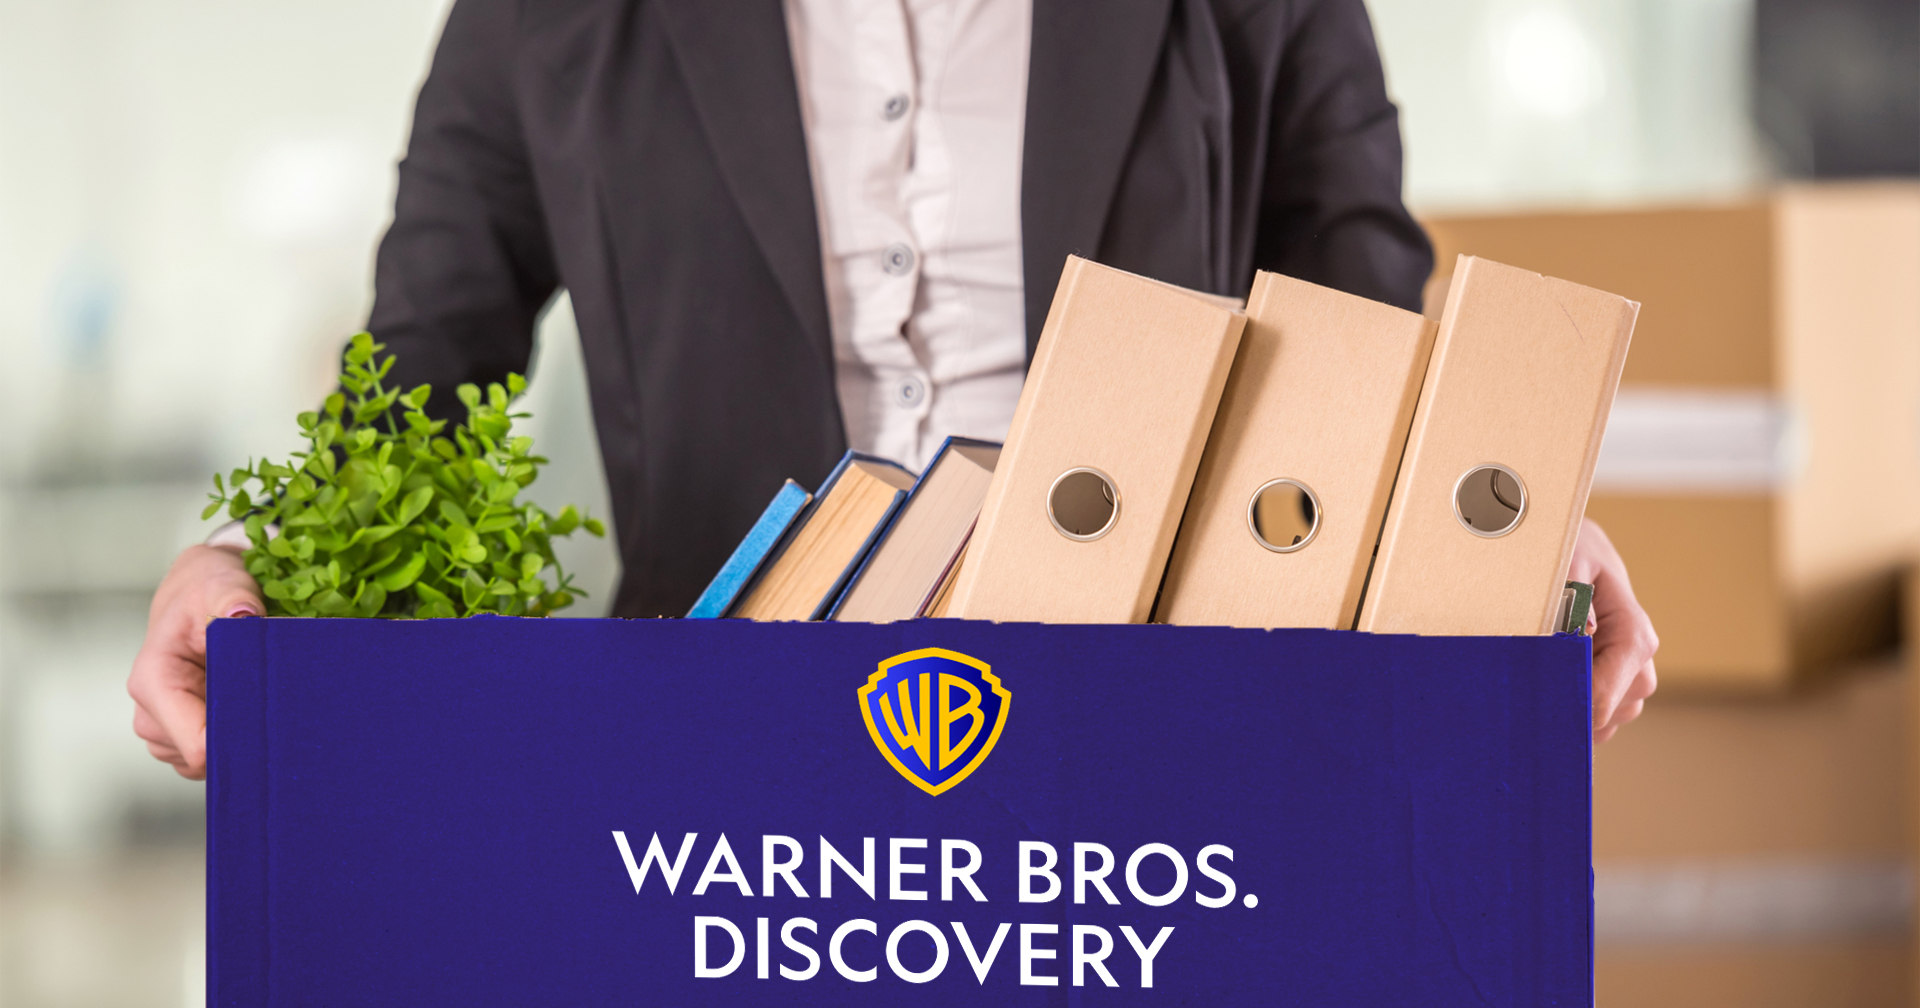 Warner Bros. Discovery เลิกจ้างพนักงานกว่า 100 คน หลังควบรวมกิจการ